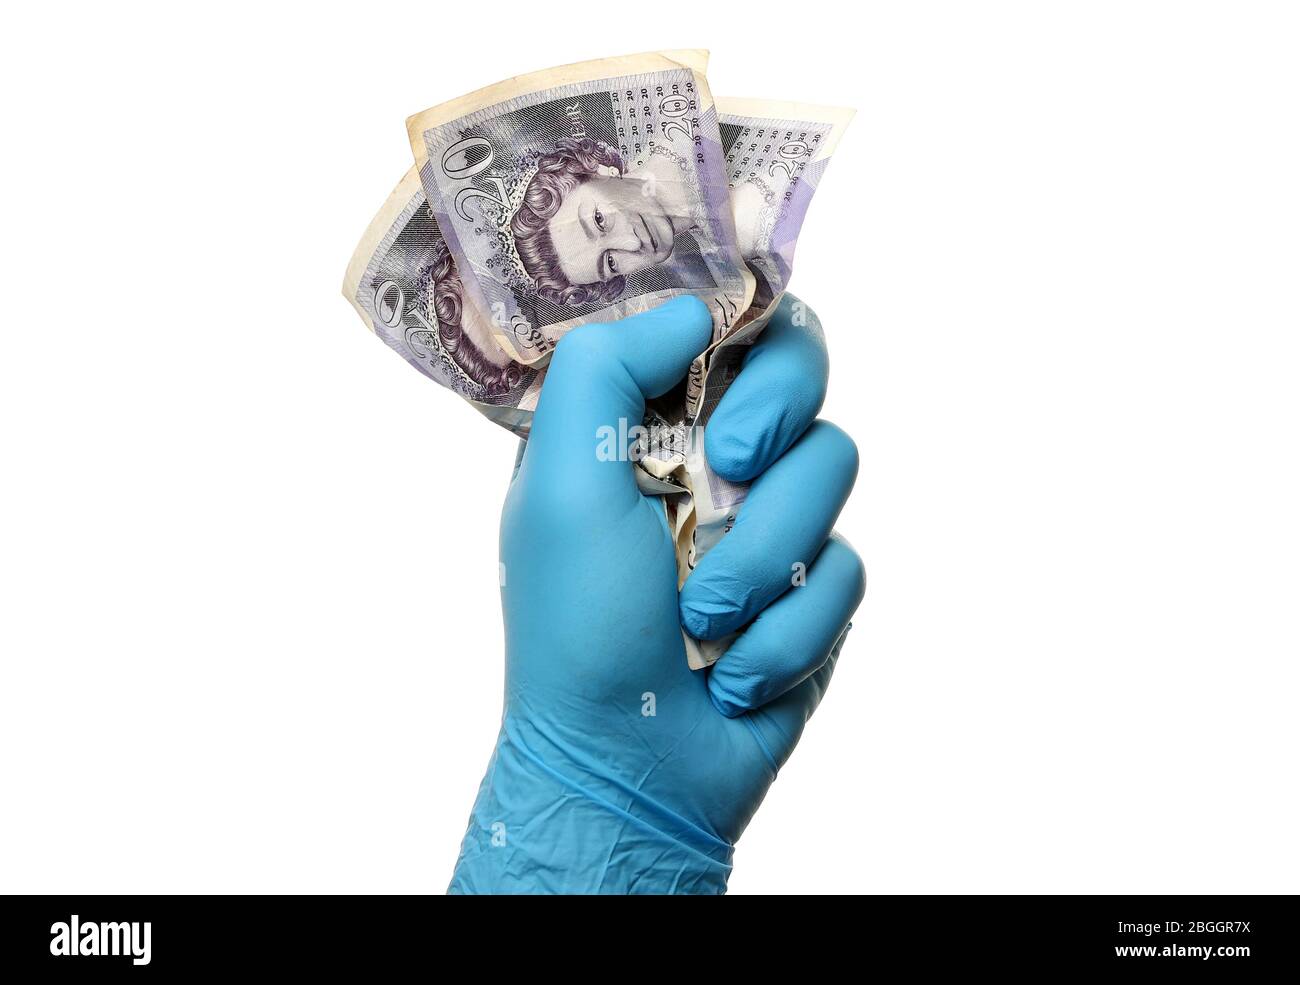 Covid 19 Finanzkonzept Bild eines Mannes in einem chirurgischen Gummihandschuh mit UK 20 Pfund Noten als Coronavirus zerdrückt die Wirtschaft Stockfoto